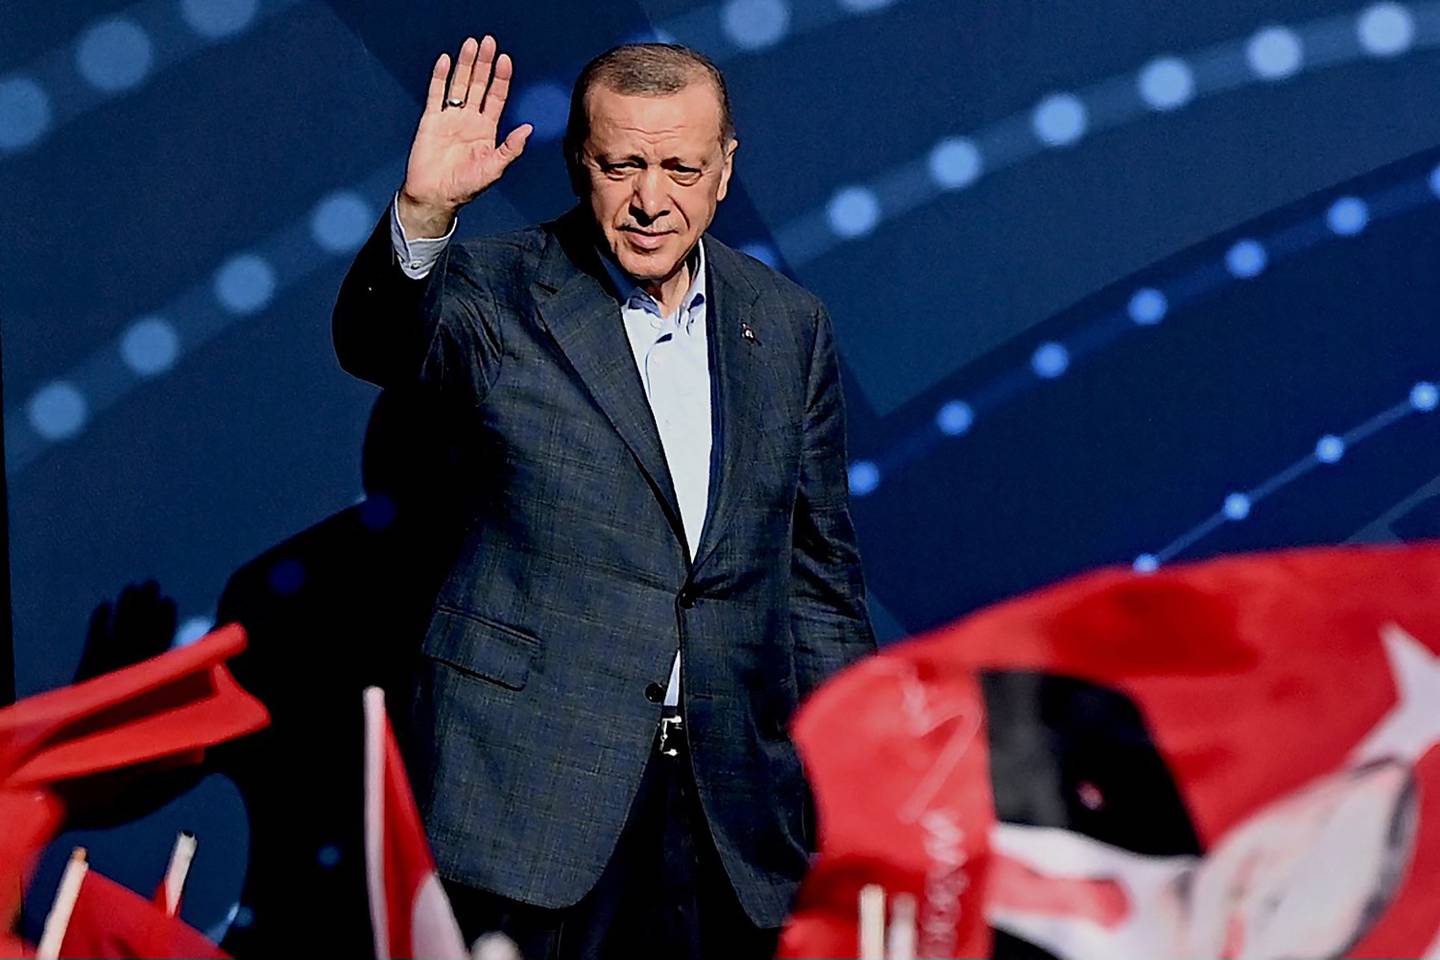 Tyrkias president Recep Tayyip Erdogan hilser tilhengere i Istanbul 15. juli 2022, under en markering av Tyrkias dag for "demokrati og nasjonal enhet".